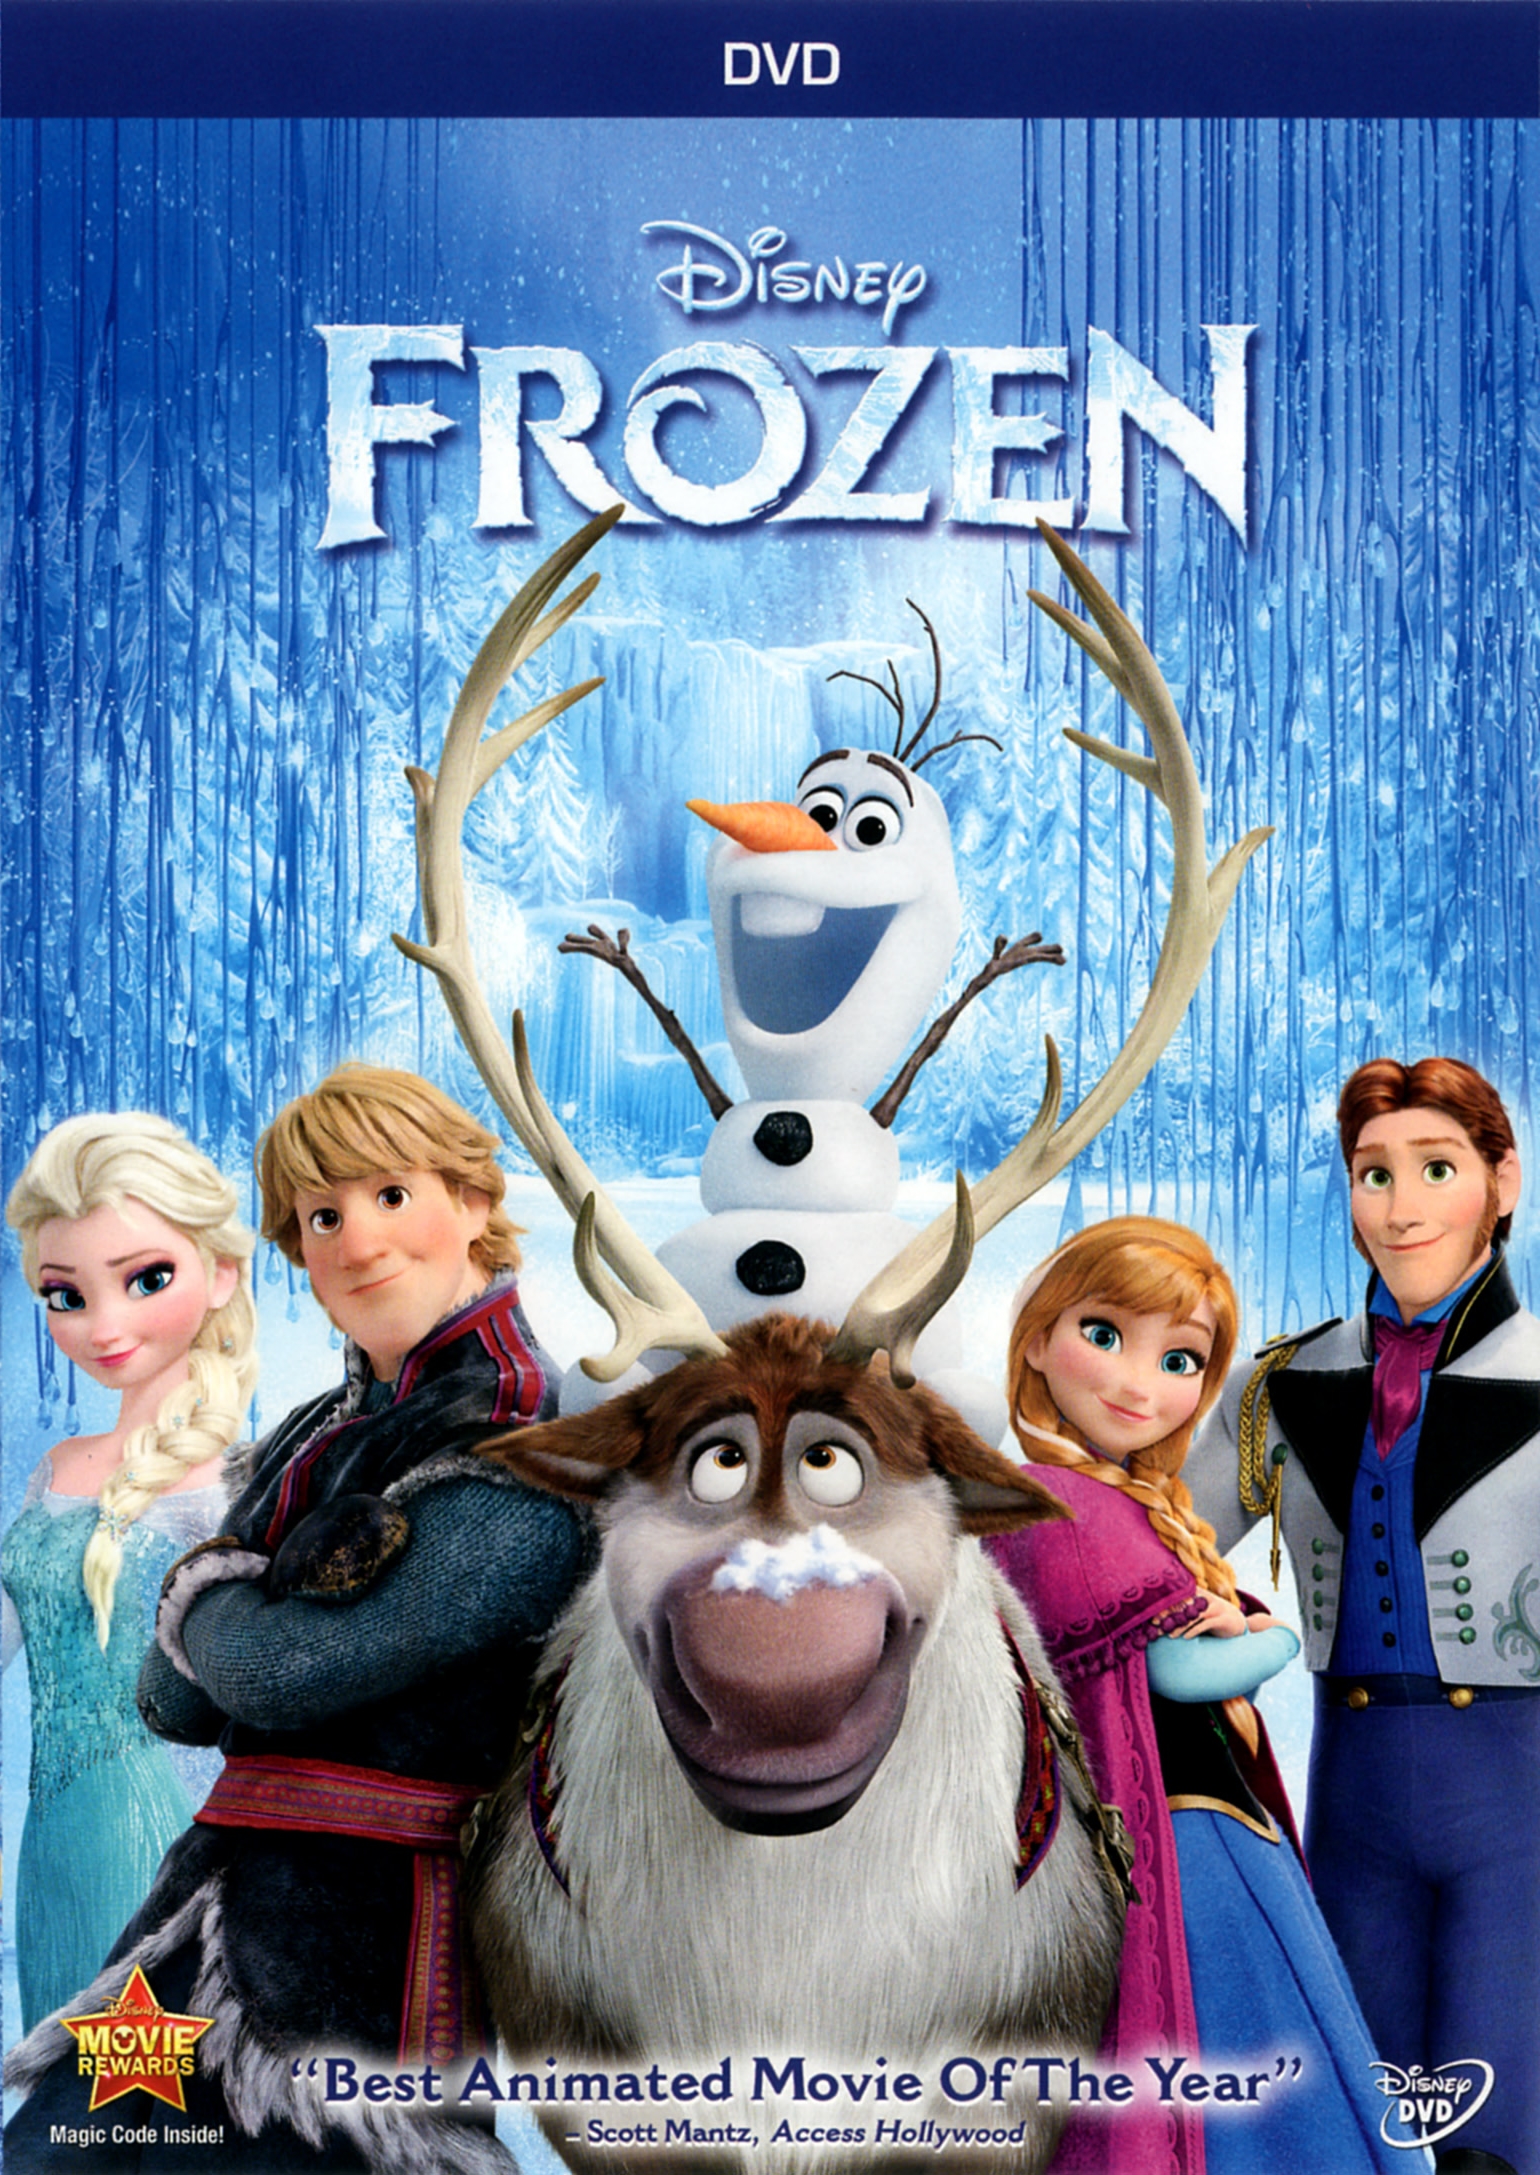 Frozen (video) | Disney Wiki | FANDOM powered by Wikia